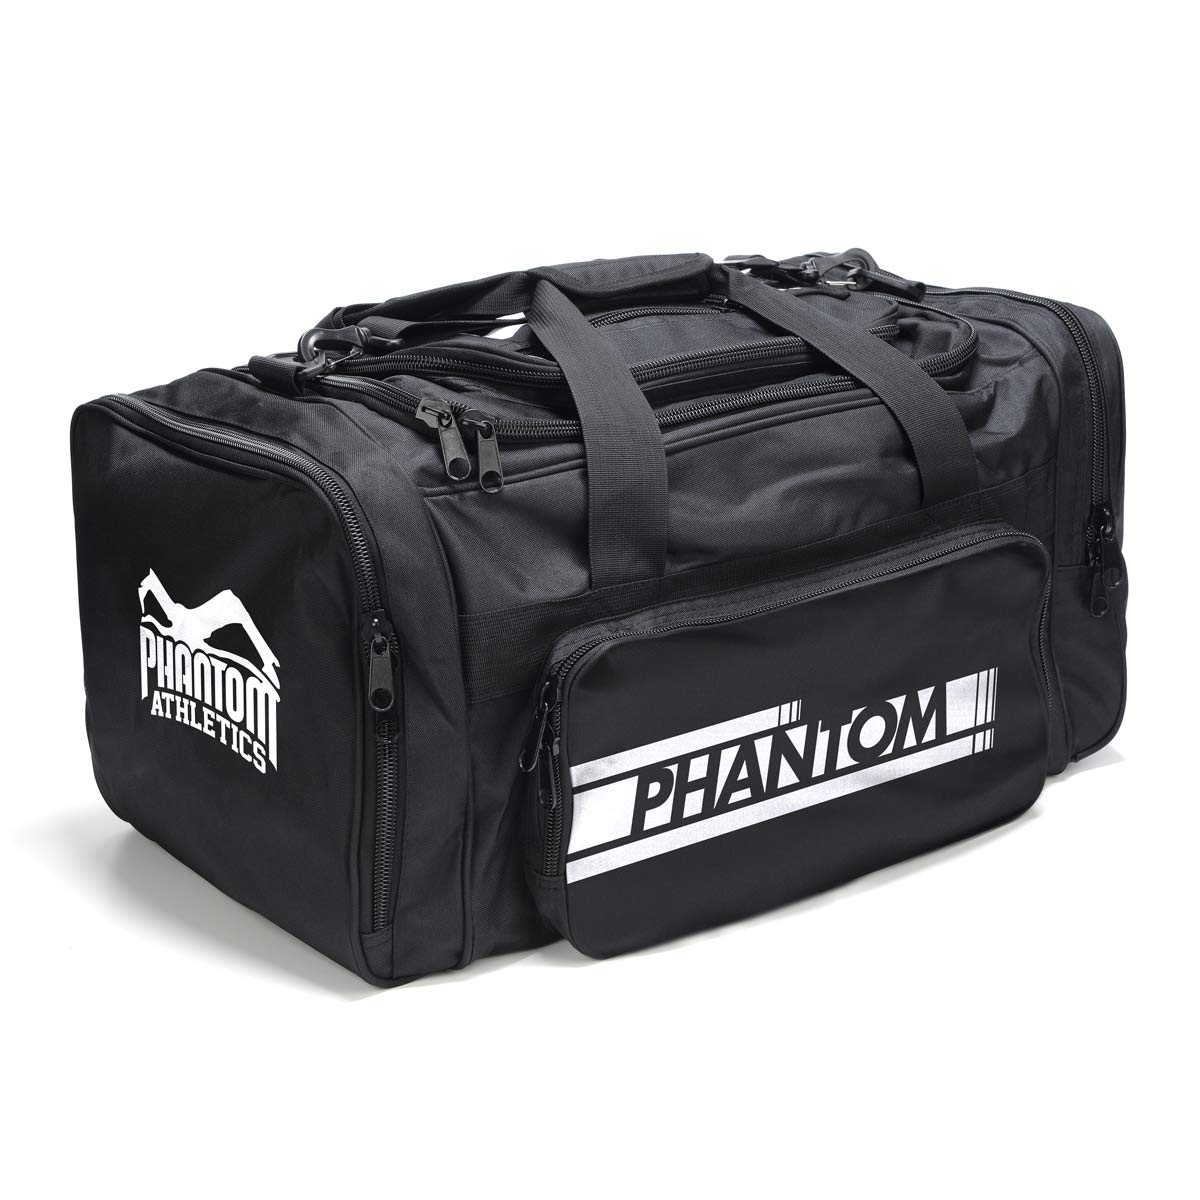 Phantom TEAM sportväska med många fack för kampsport